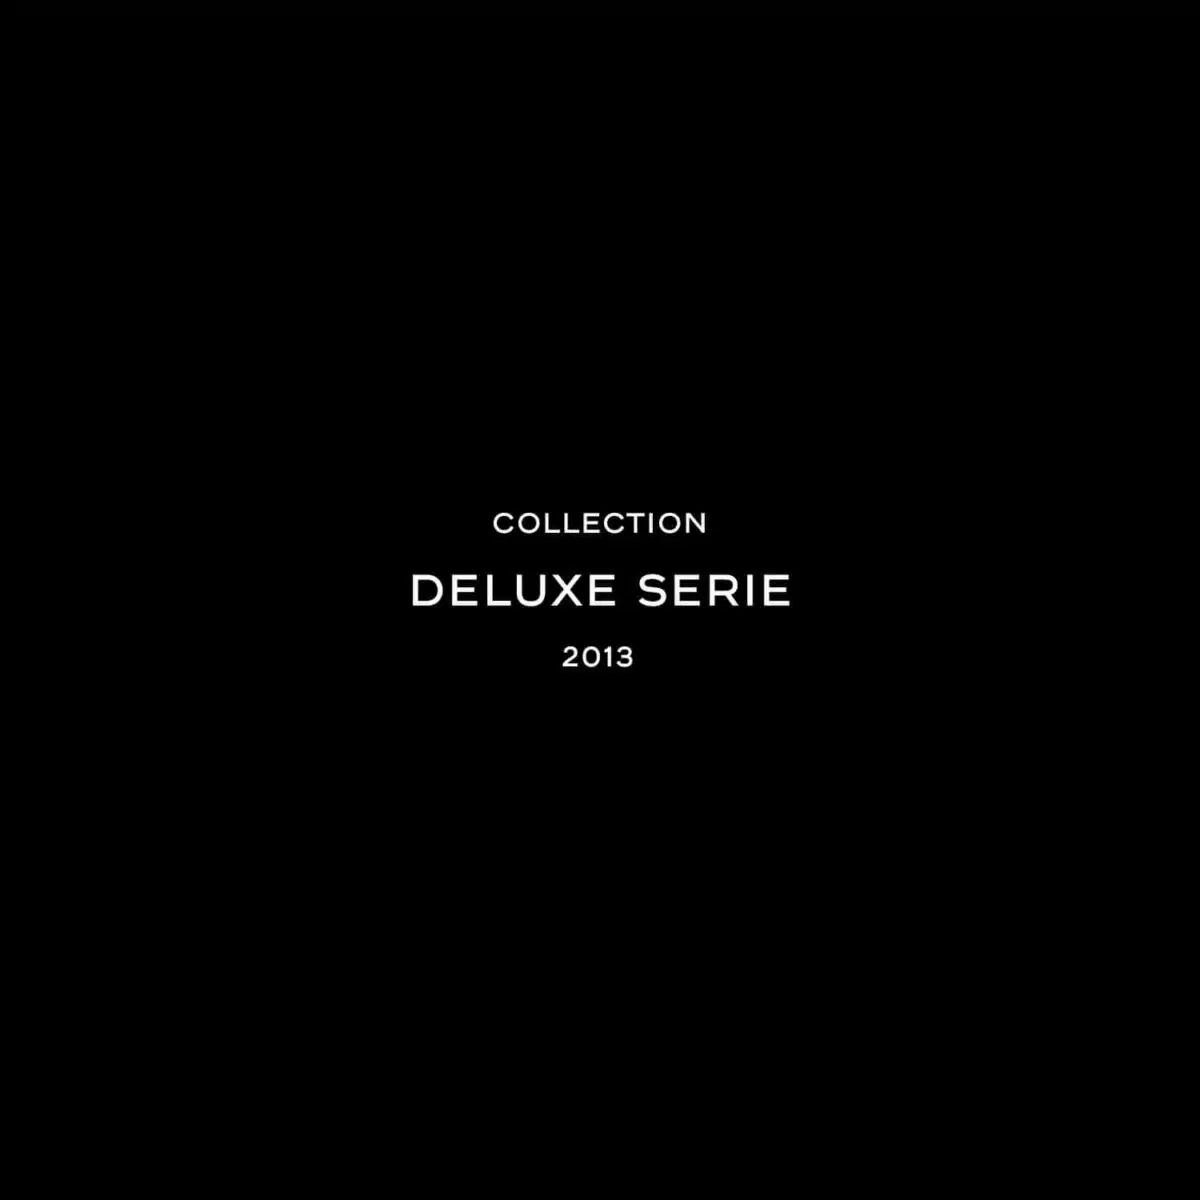 Deluxe series